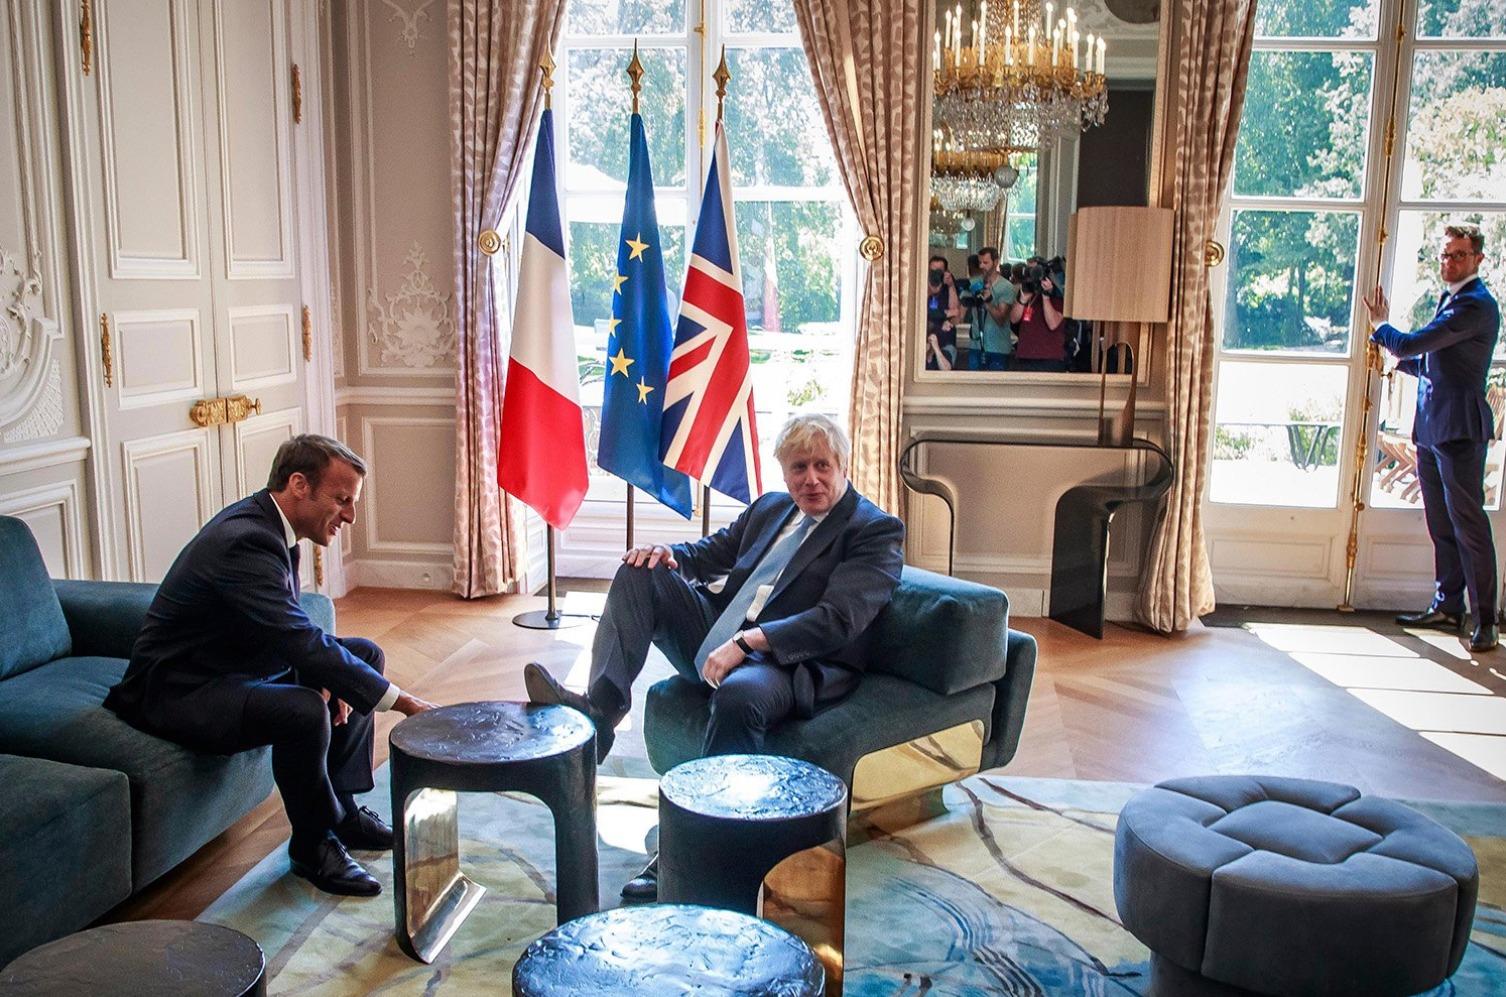 El Primer Ministro británico Boris Johnson junto al Presidente de Francia Emmanuel Macron en su reunión en el Palacio del Elíseo, París. EP